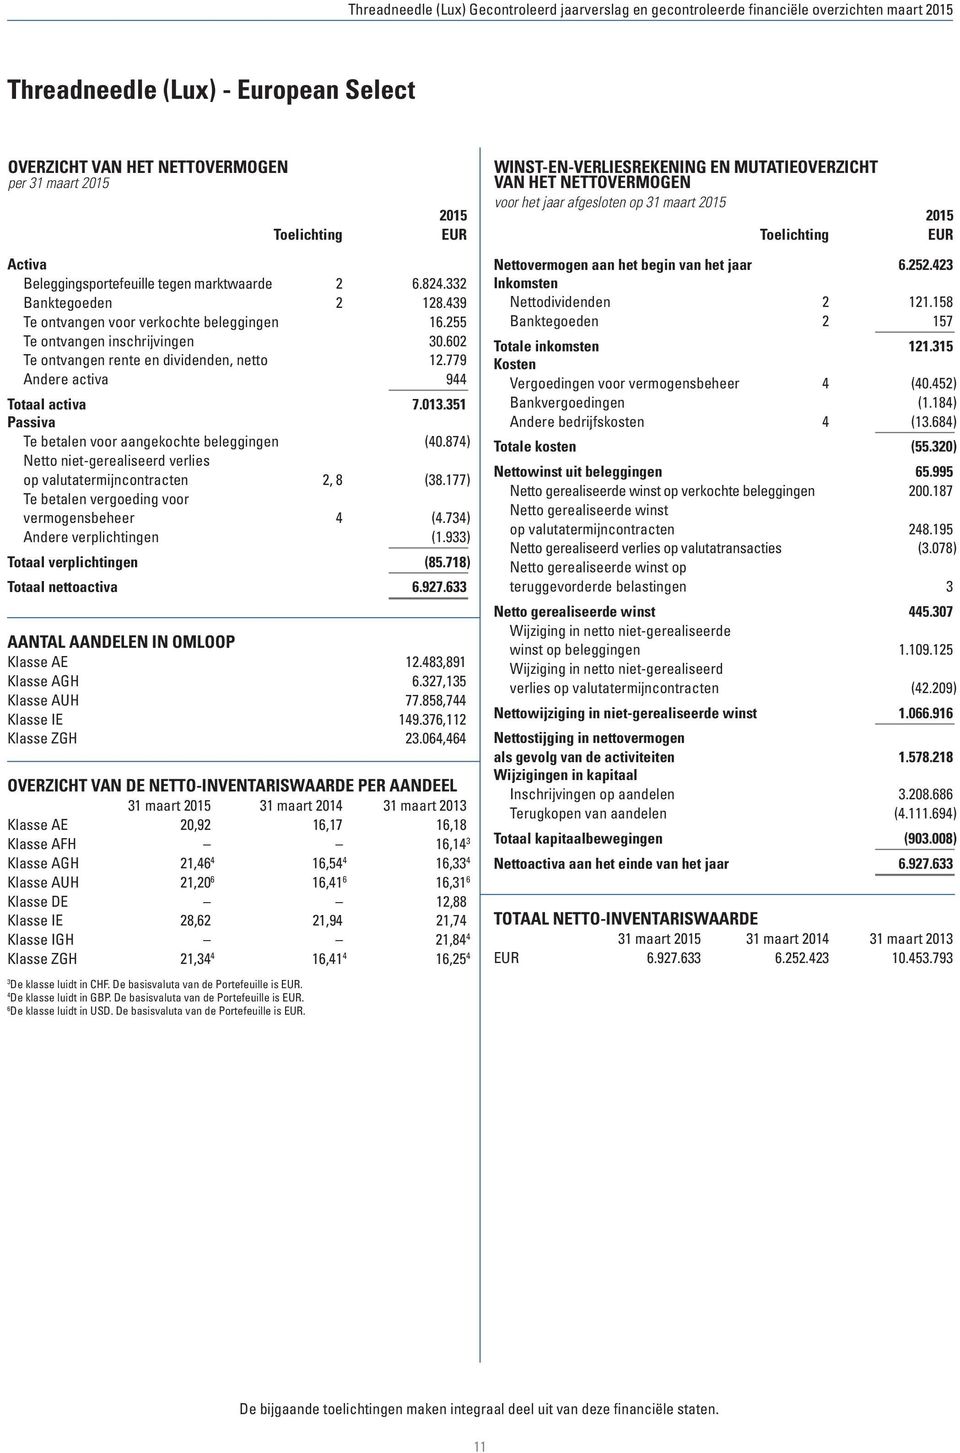 351 Passiva Te betalen voor aangekochte beleggingen (40.874) Netto niet-gerealiseerd verlies op valutatermijncontracten 2, 8 (38.177) Te betalen vergoeding voor vermogensbeheer 4 (4.